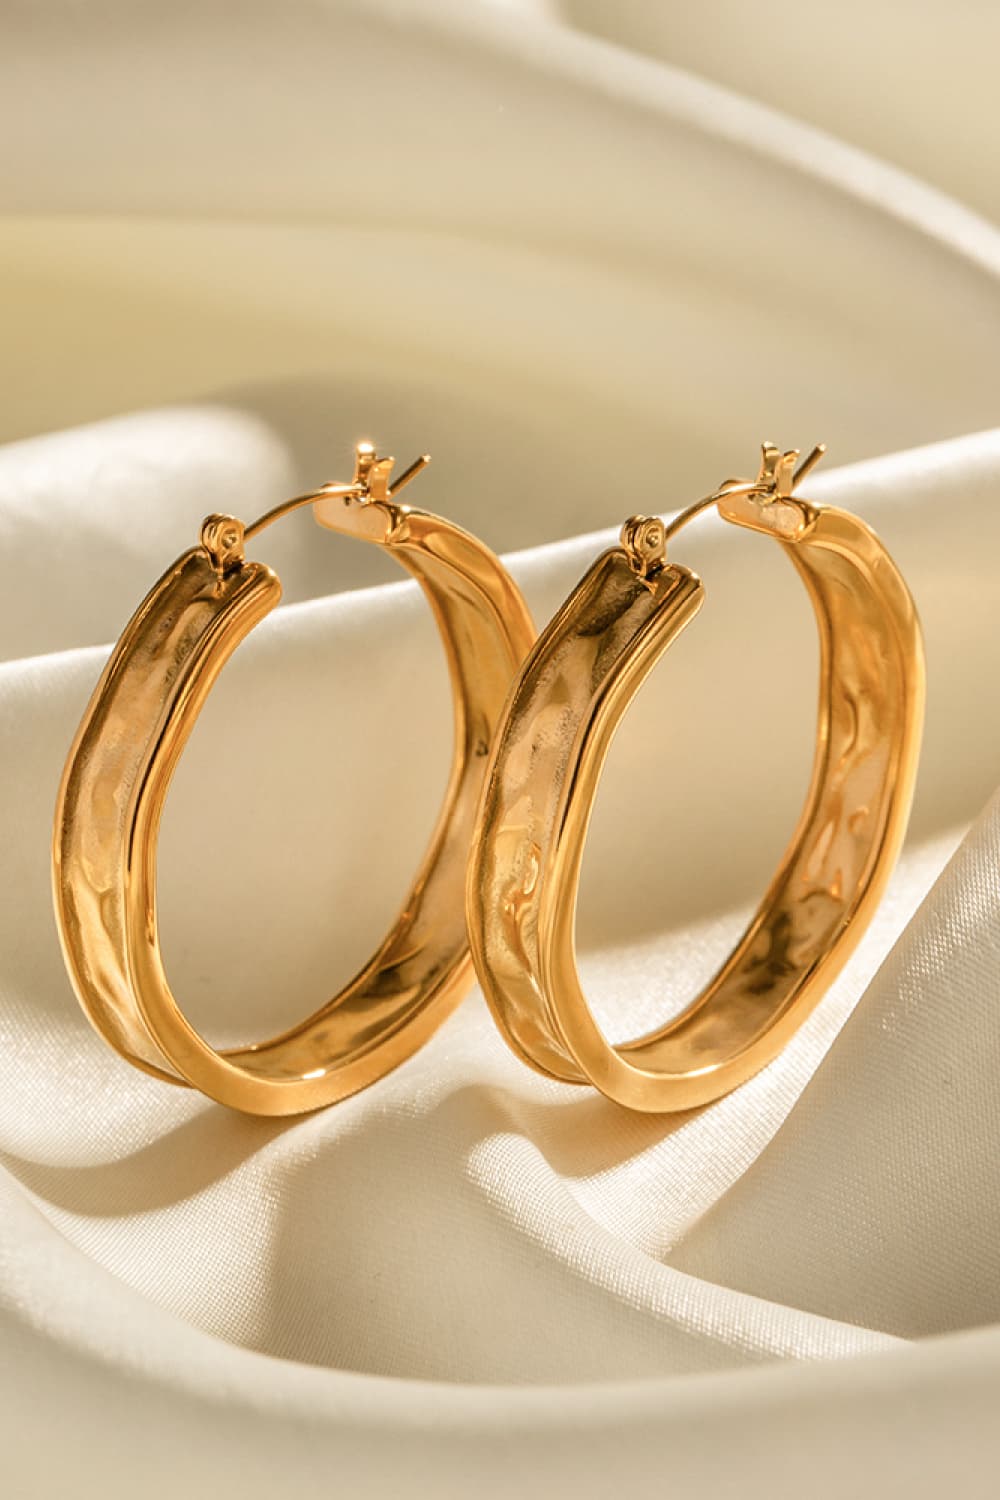 18K Gold Stainless Steel Hoop Earrings